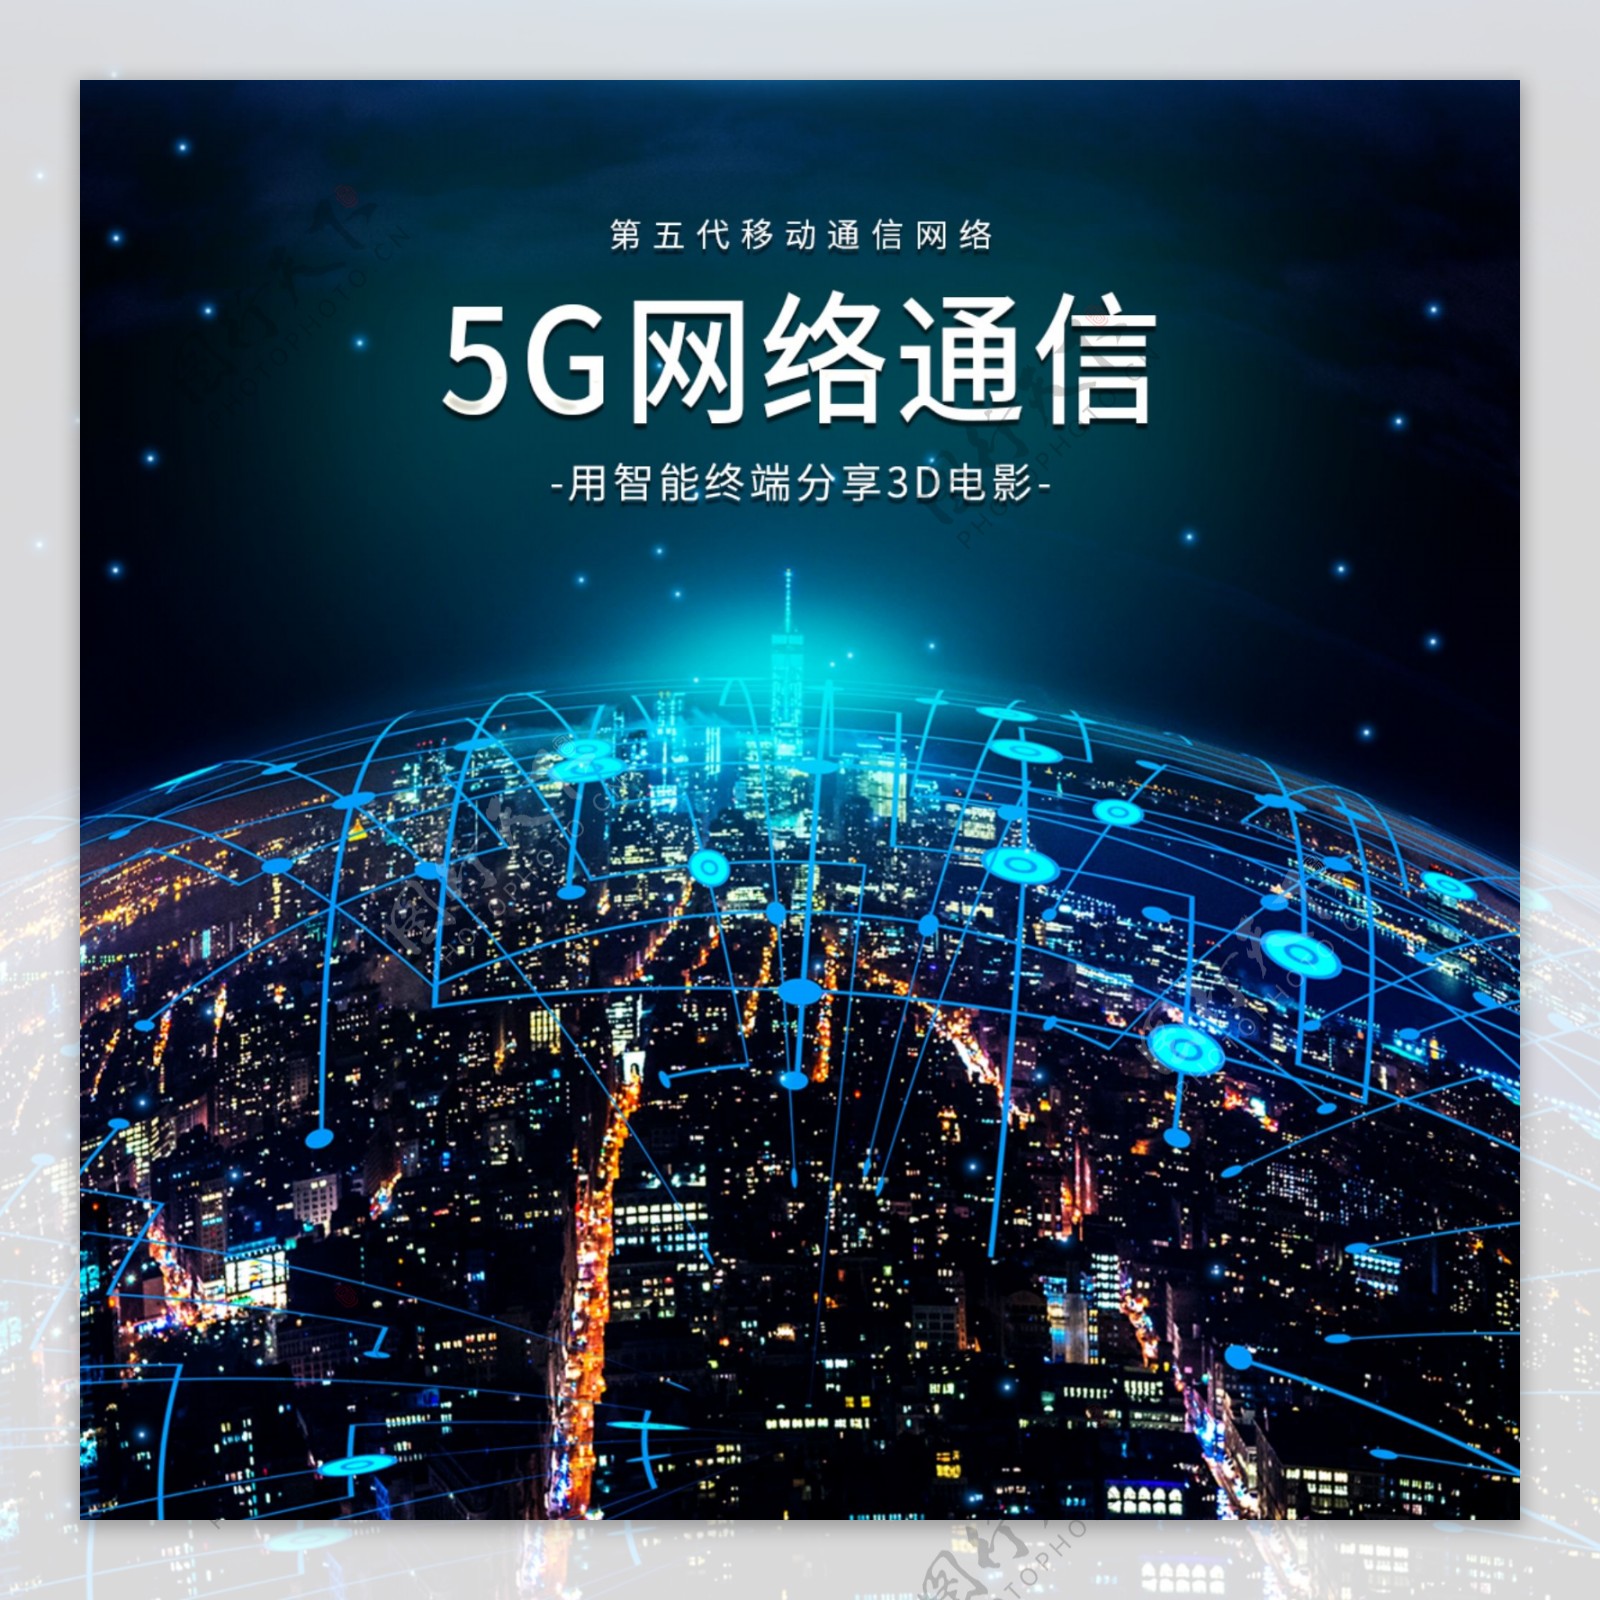 5G通信海报图